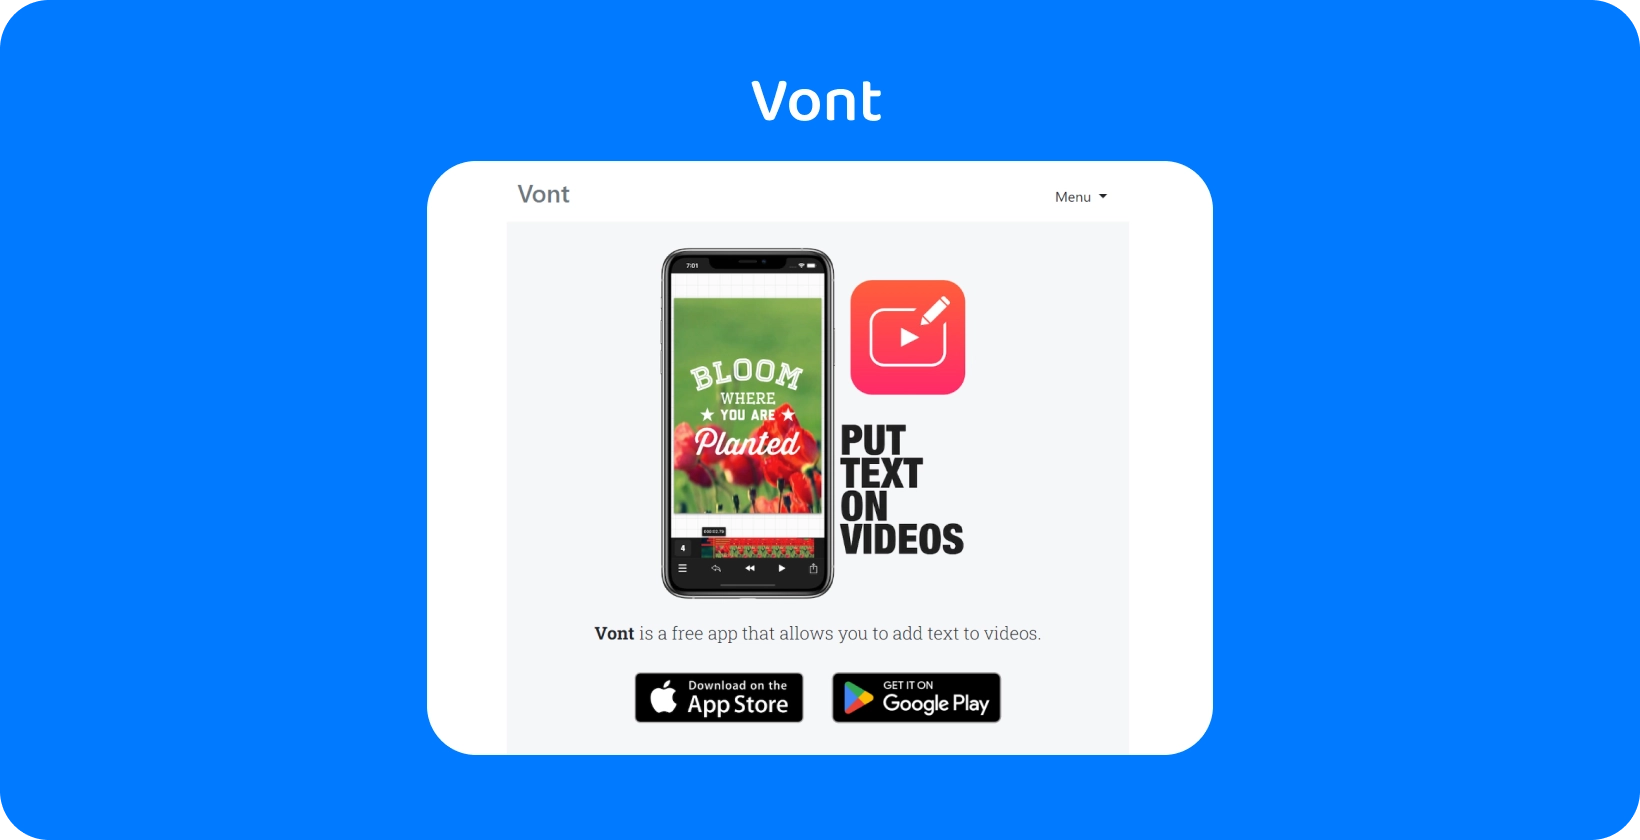 Смартфон, показващ интерфейса Vont приложението, подчертавайки функцията му за добавяне на текст към видеоклипове, налични на App Store и Google Play